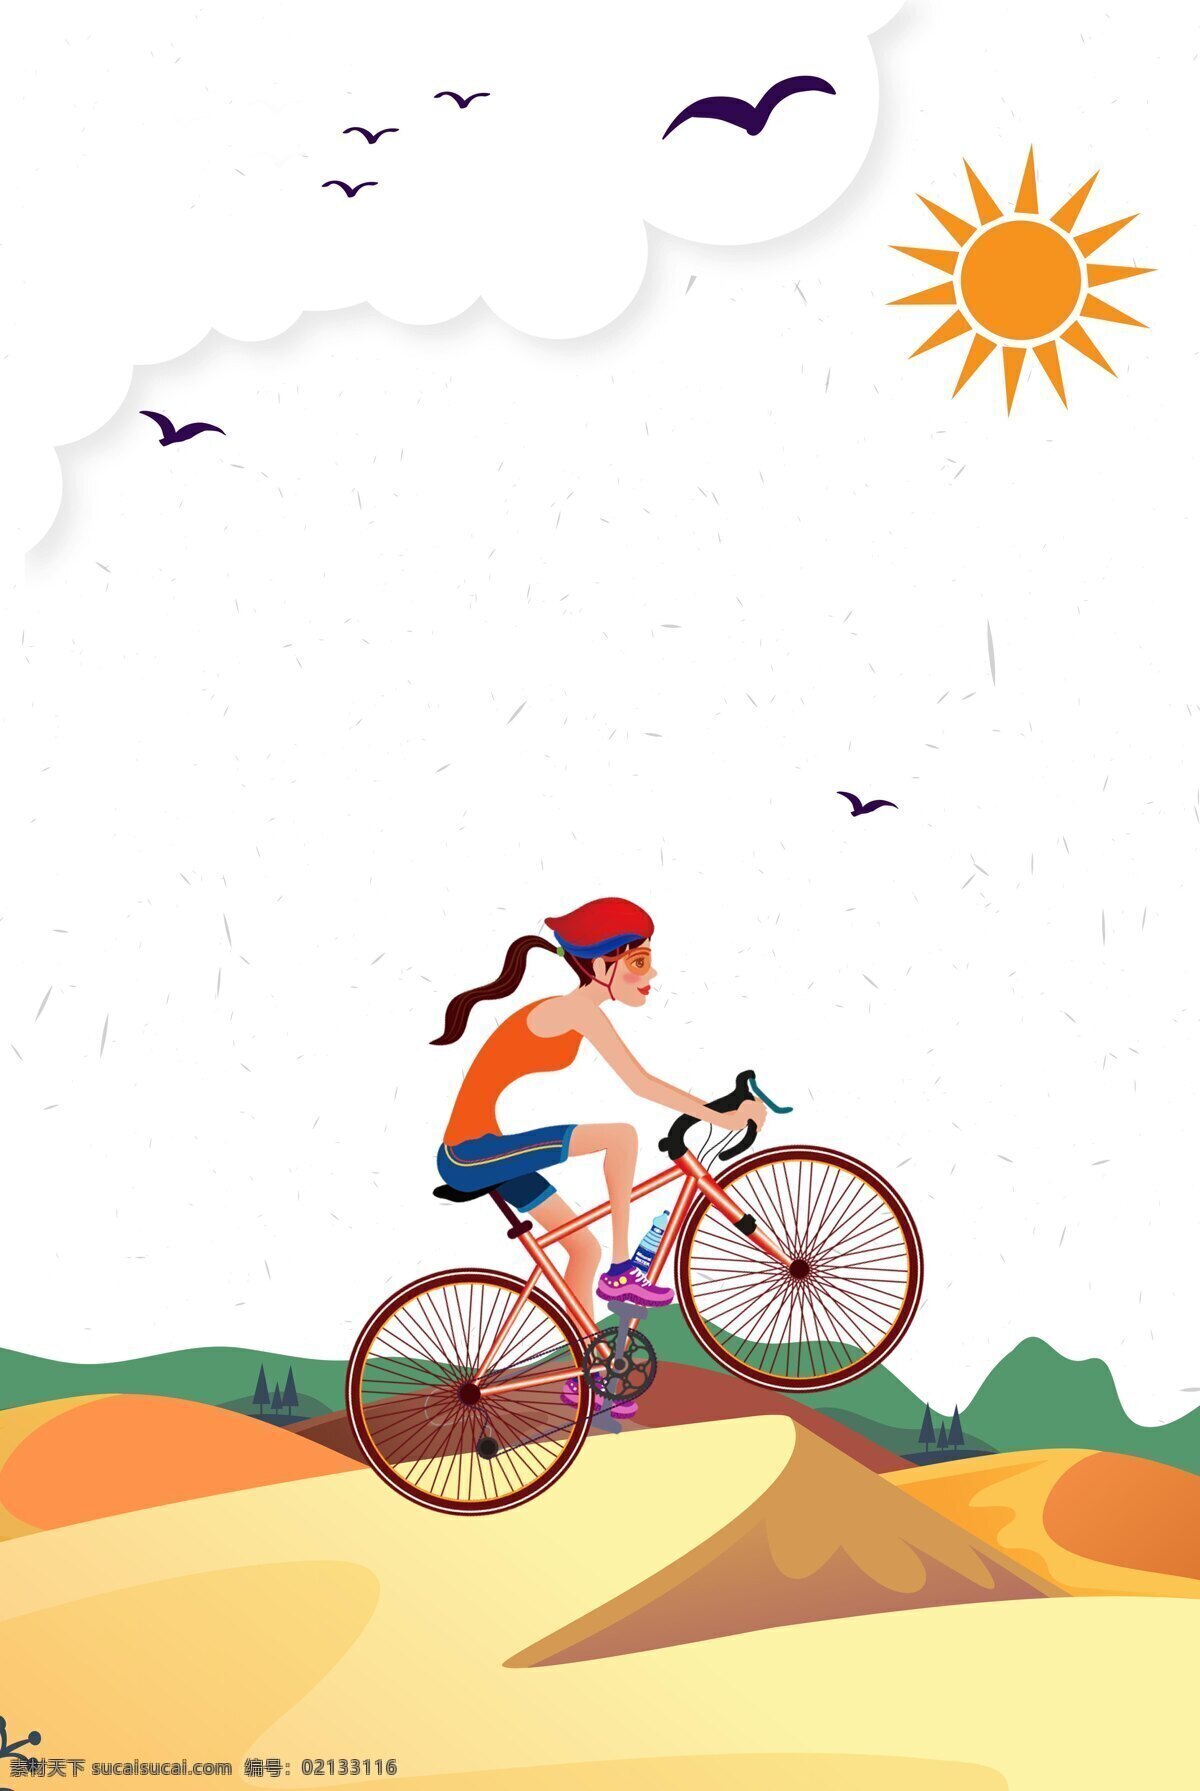 手绘 骑 行 阳光 背景 大雁 卡通 太阳 骑行 运动 山坡 挑战自我 广告背景